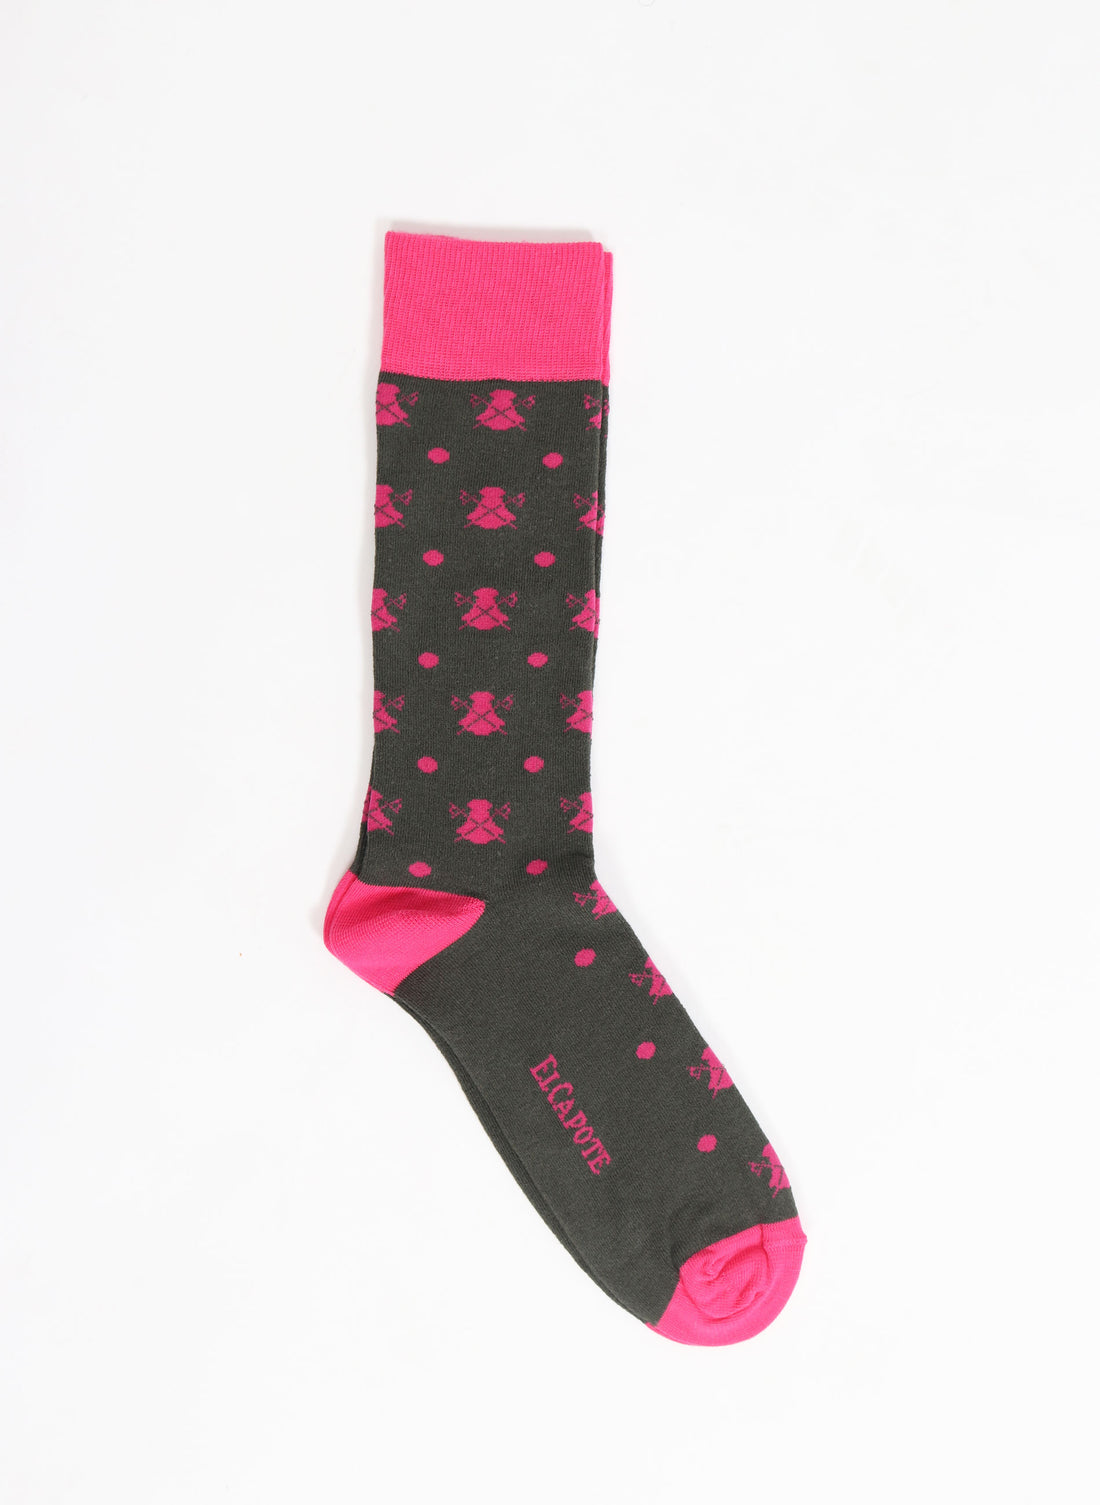 Khakigrüne Socke mit Umhängen und rosa Tupfen